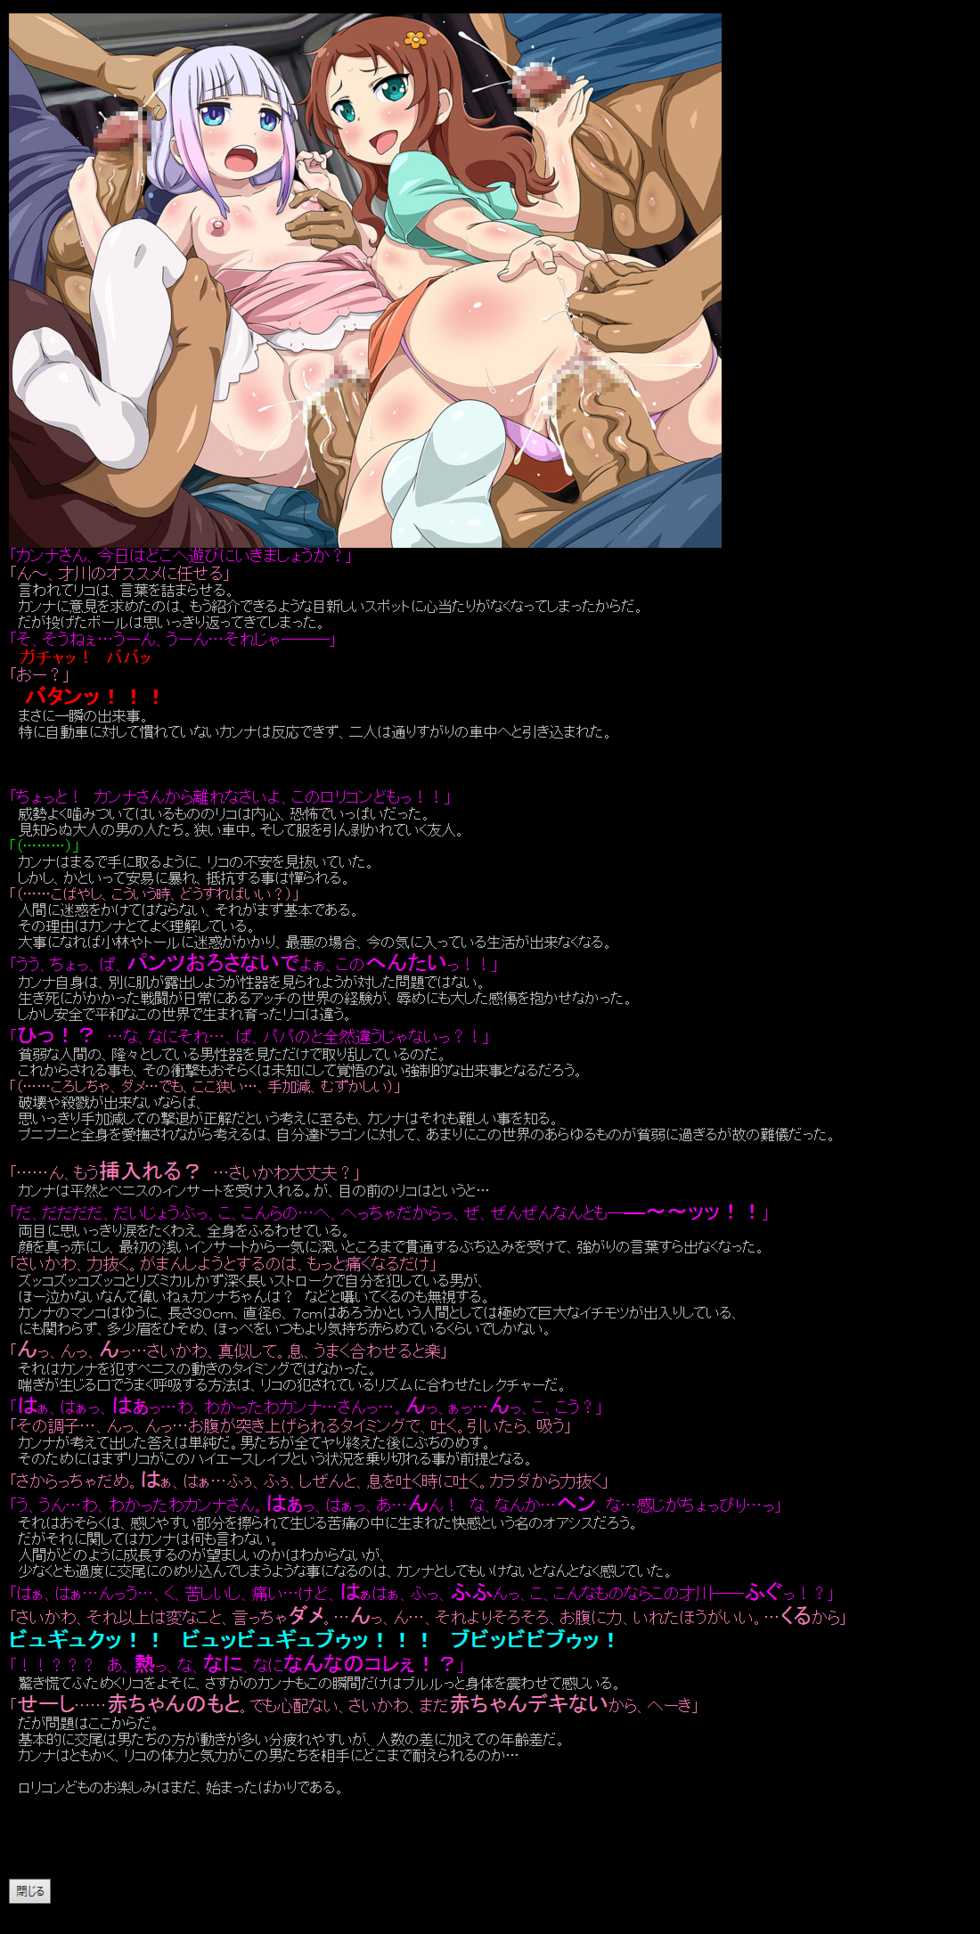 [LolitaChannel (Arigase Shinji)] Yuumei Chara Kannou Shousetsu CG Shuu No.367!! Kobayashi-san Chi no Maid Dragon HaaHaa CG Shuu (Kobayashi-san Chi no Maid Dragon) - Page 4